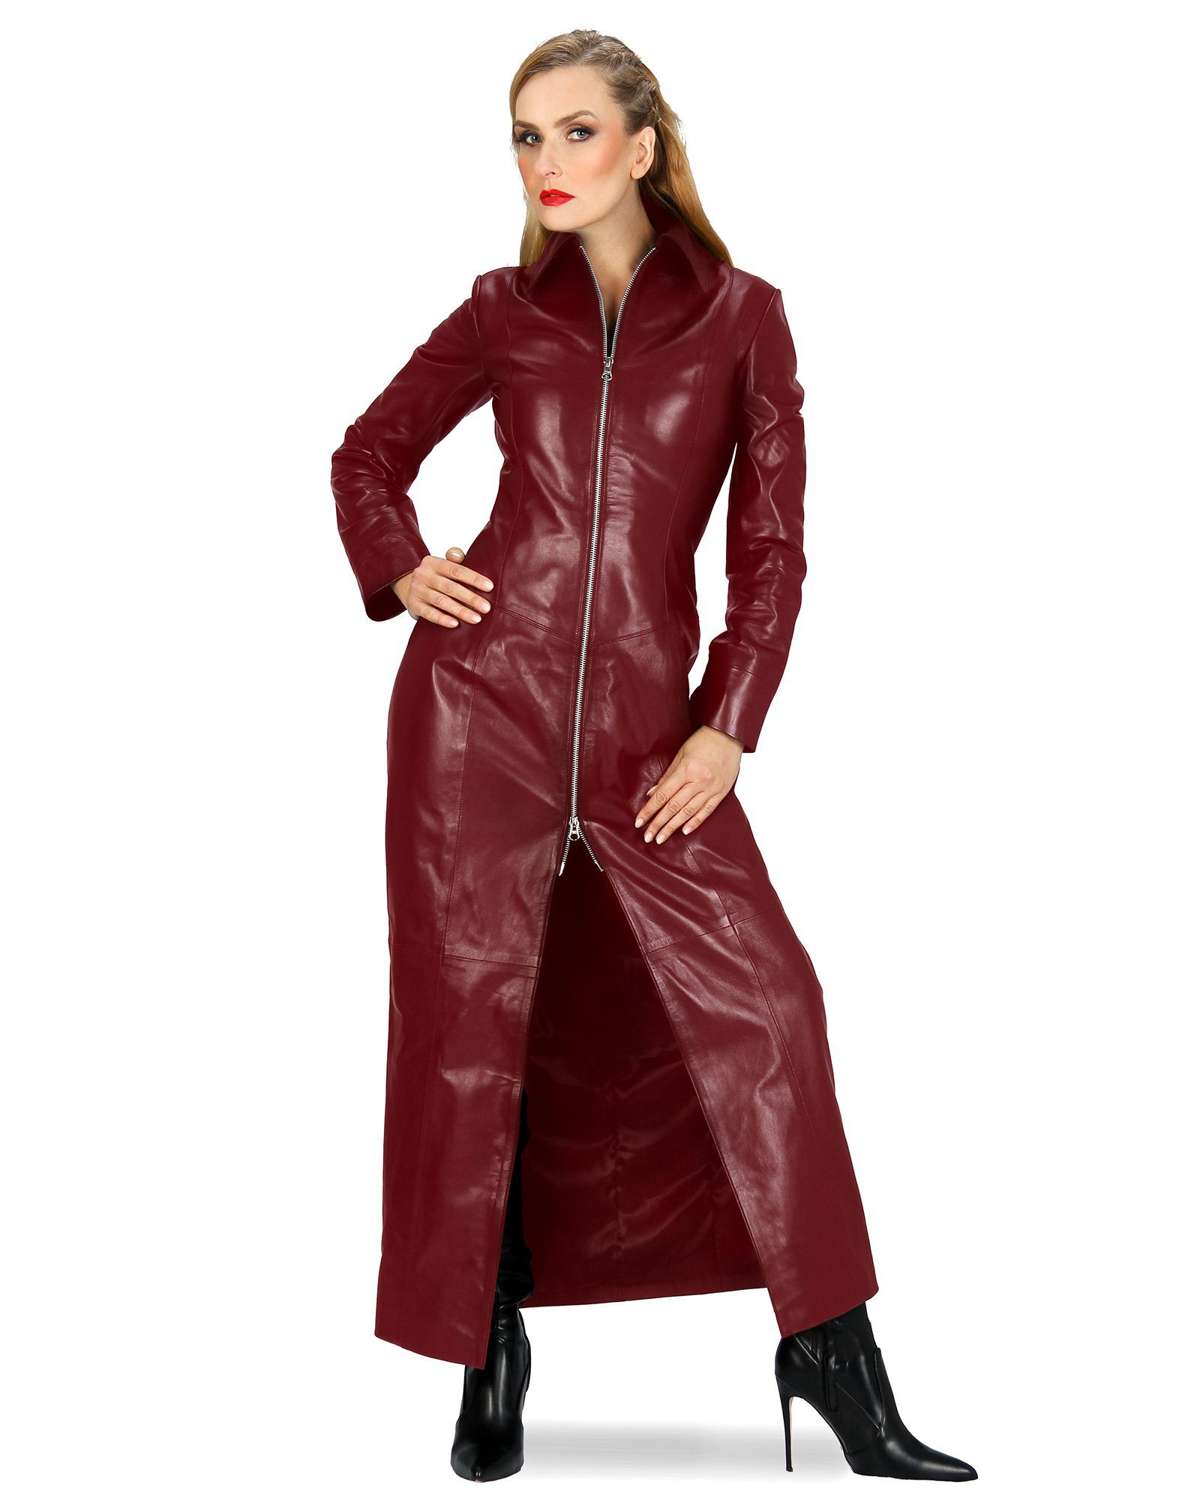 Кожаное пальто кожаное пальто Лара бордовое с корсажем сзади, мягкая наппа ягненка